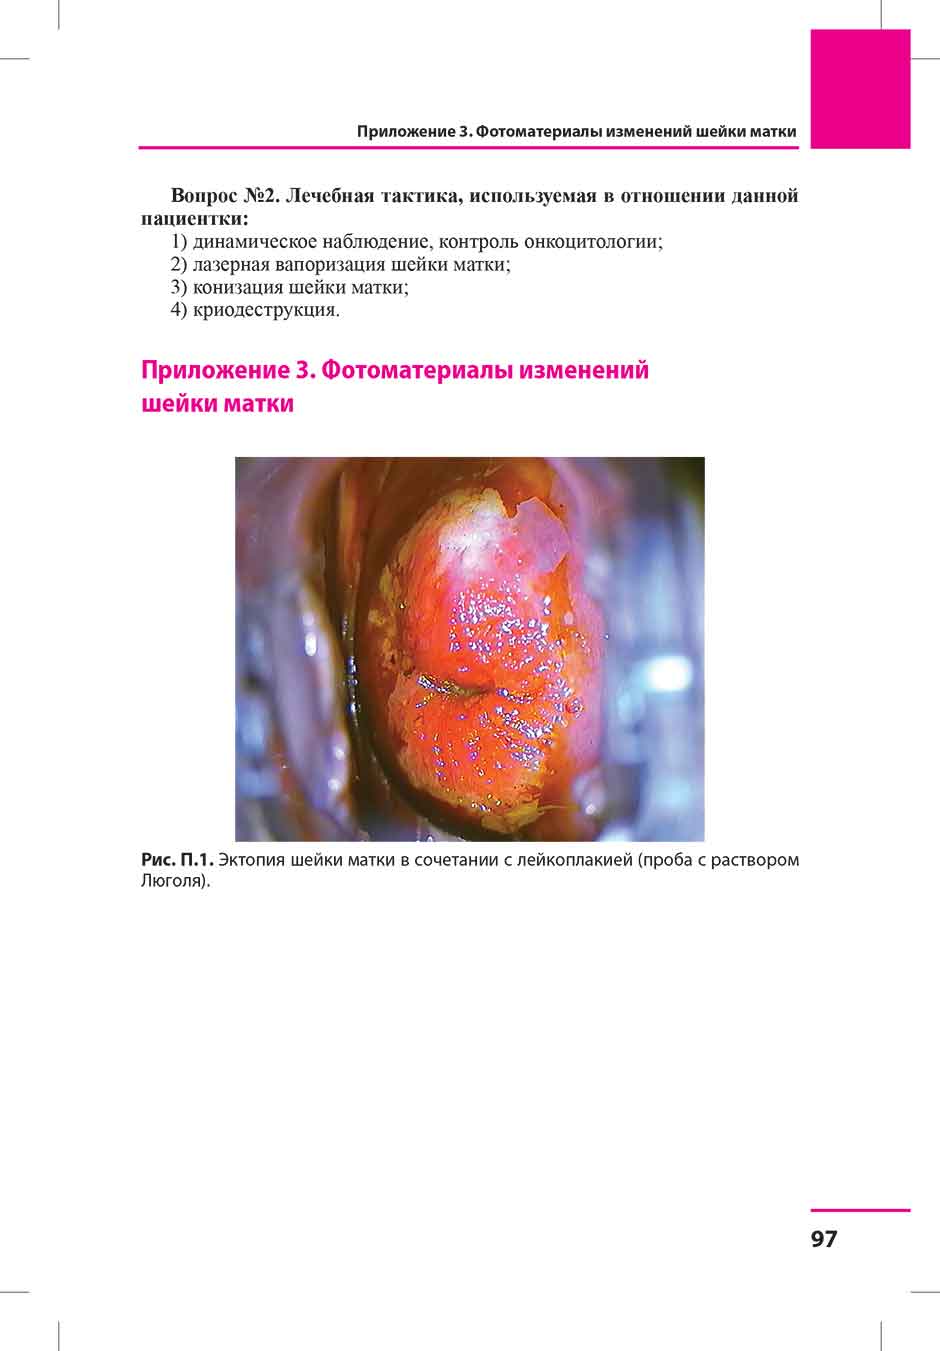 Рис. П.1. Эктопия шейки матки в сочетании с лейкоплакией (проба с раствором Люголя).